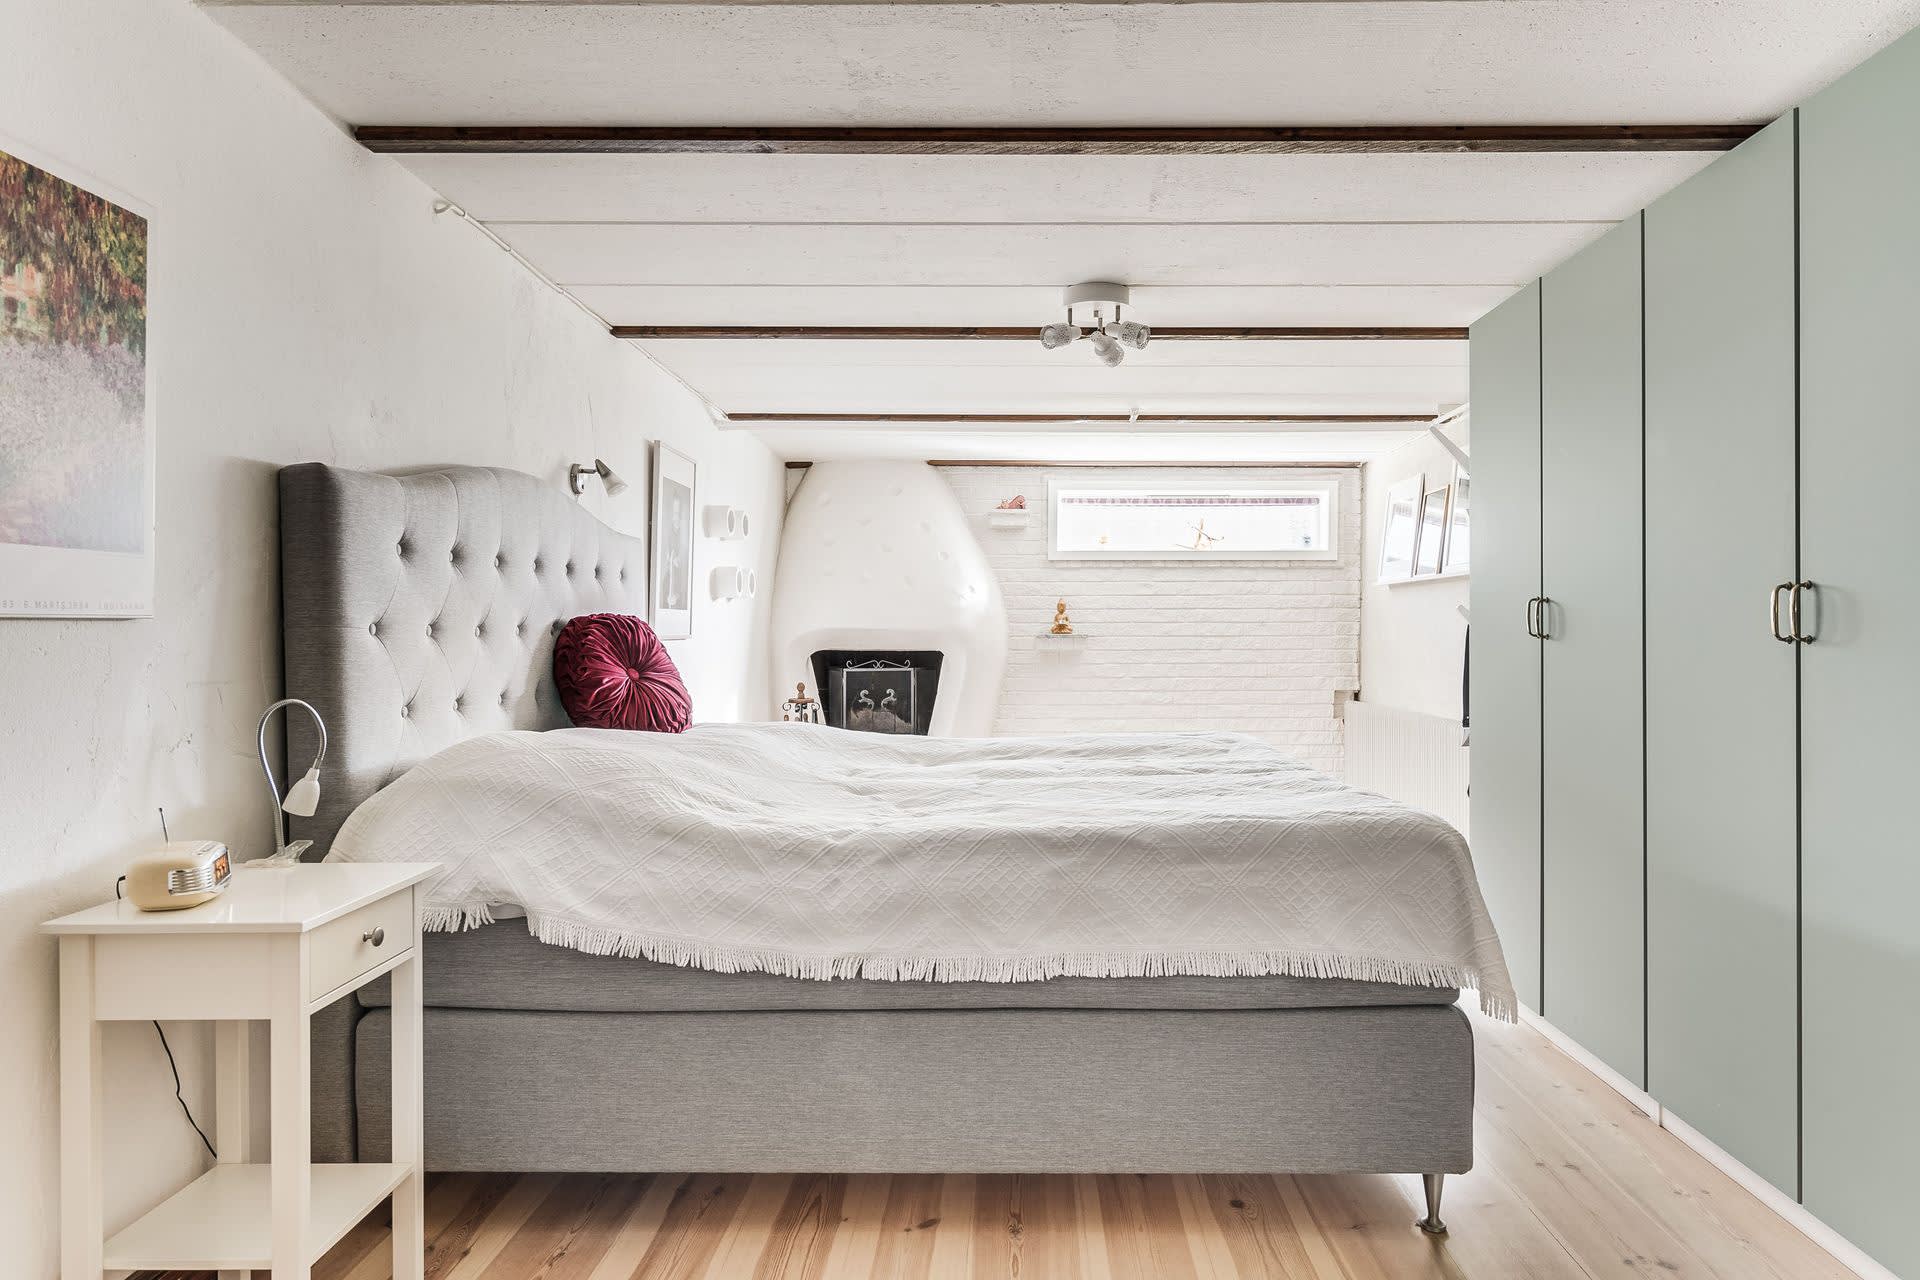 Sovrum 3 med öppenspis och garderobvägg. Renoverat 2019